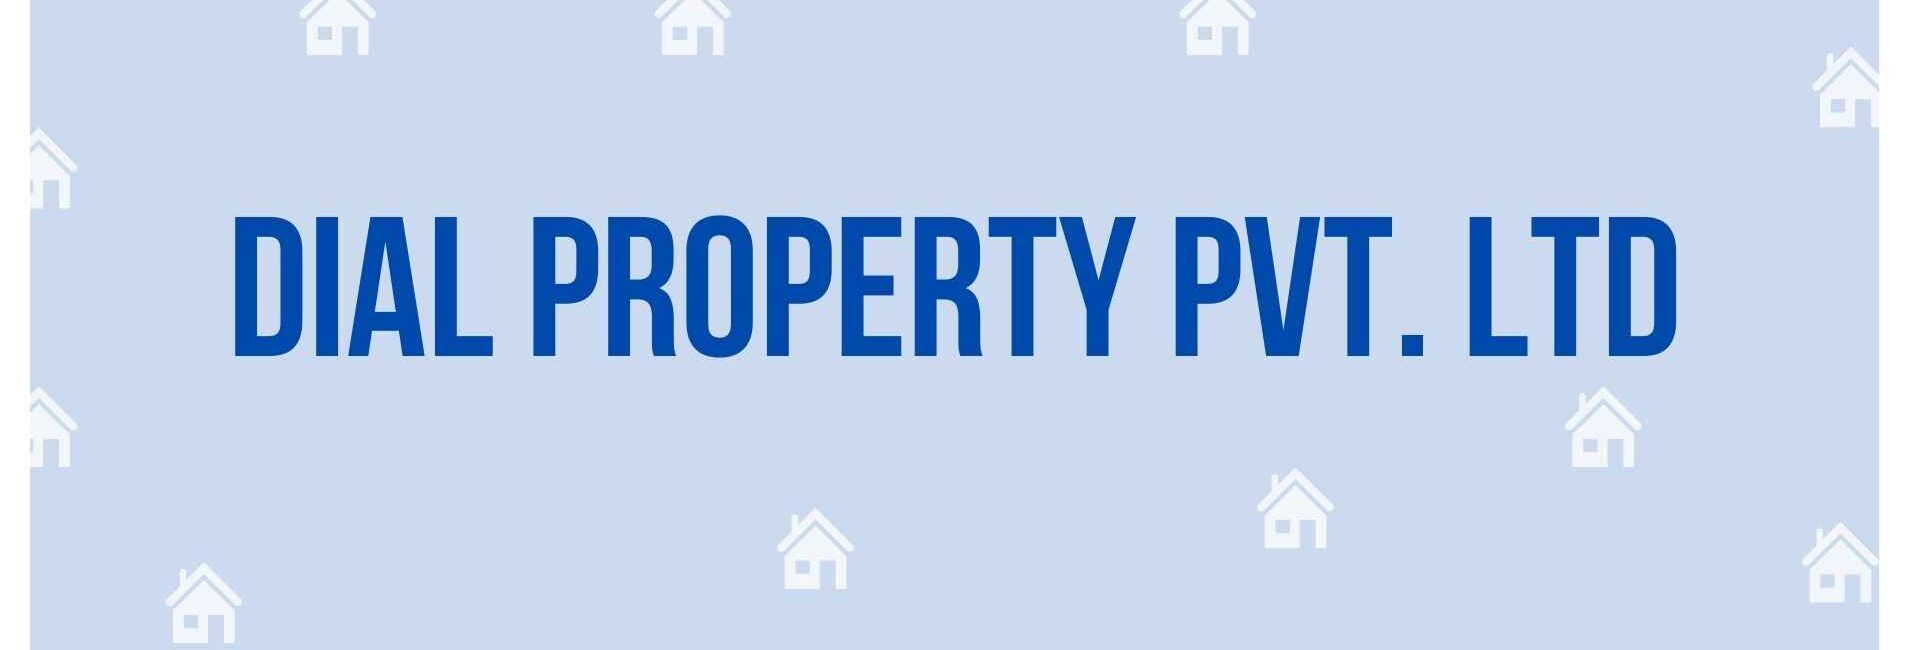 Dial Property Pvt. Ltd - Property Dealer in Noida